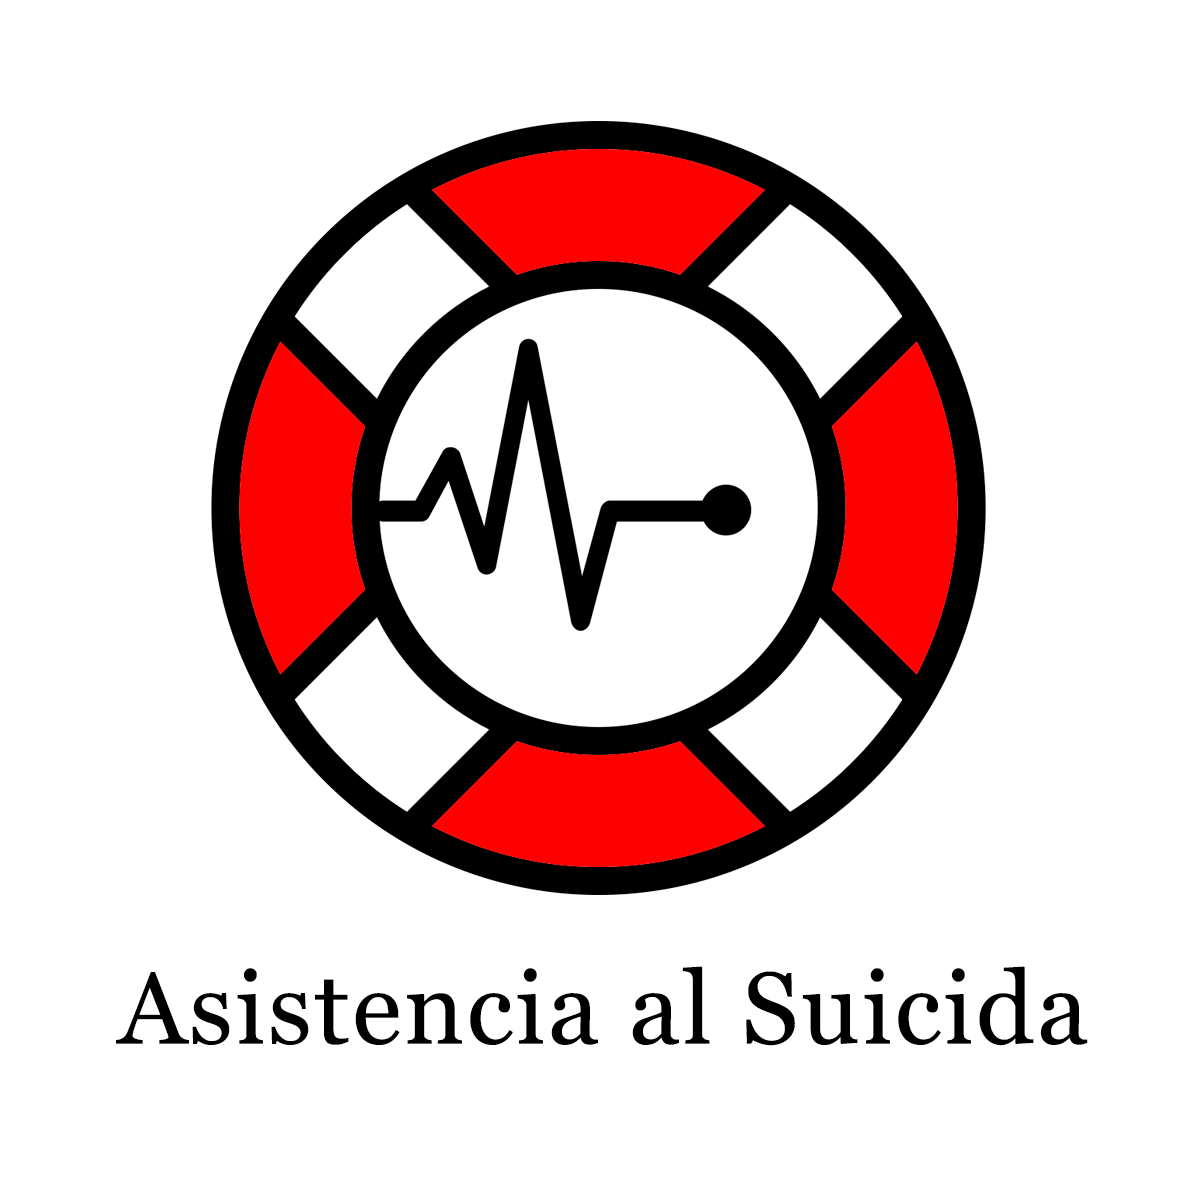 Asistencia al Suicida